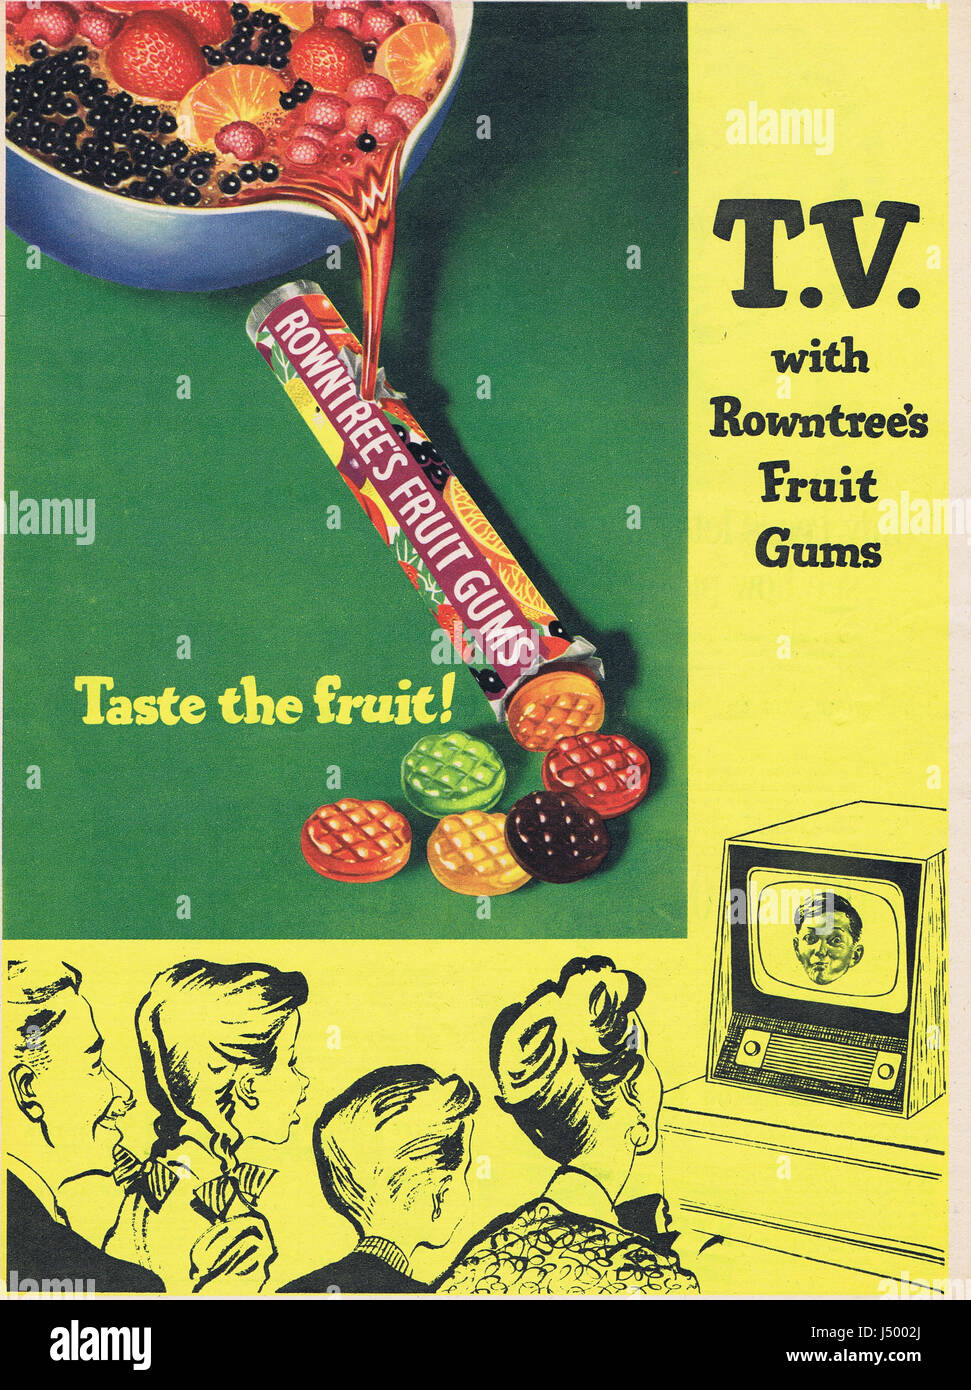 Bonbons Rowntrees Publicité Historique c1950's Banque D'Images